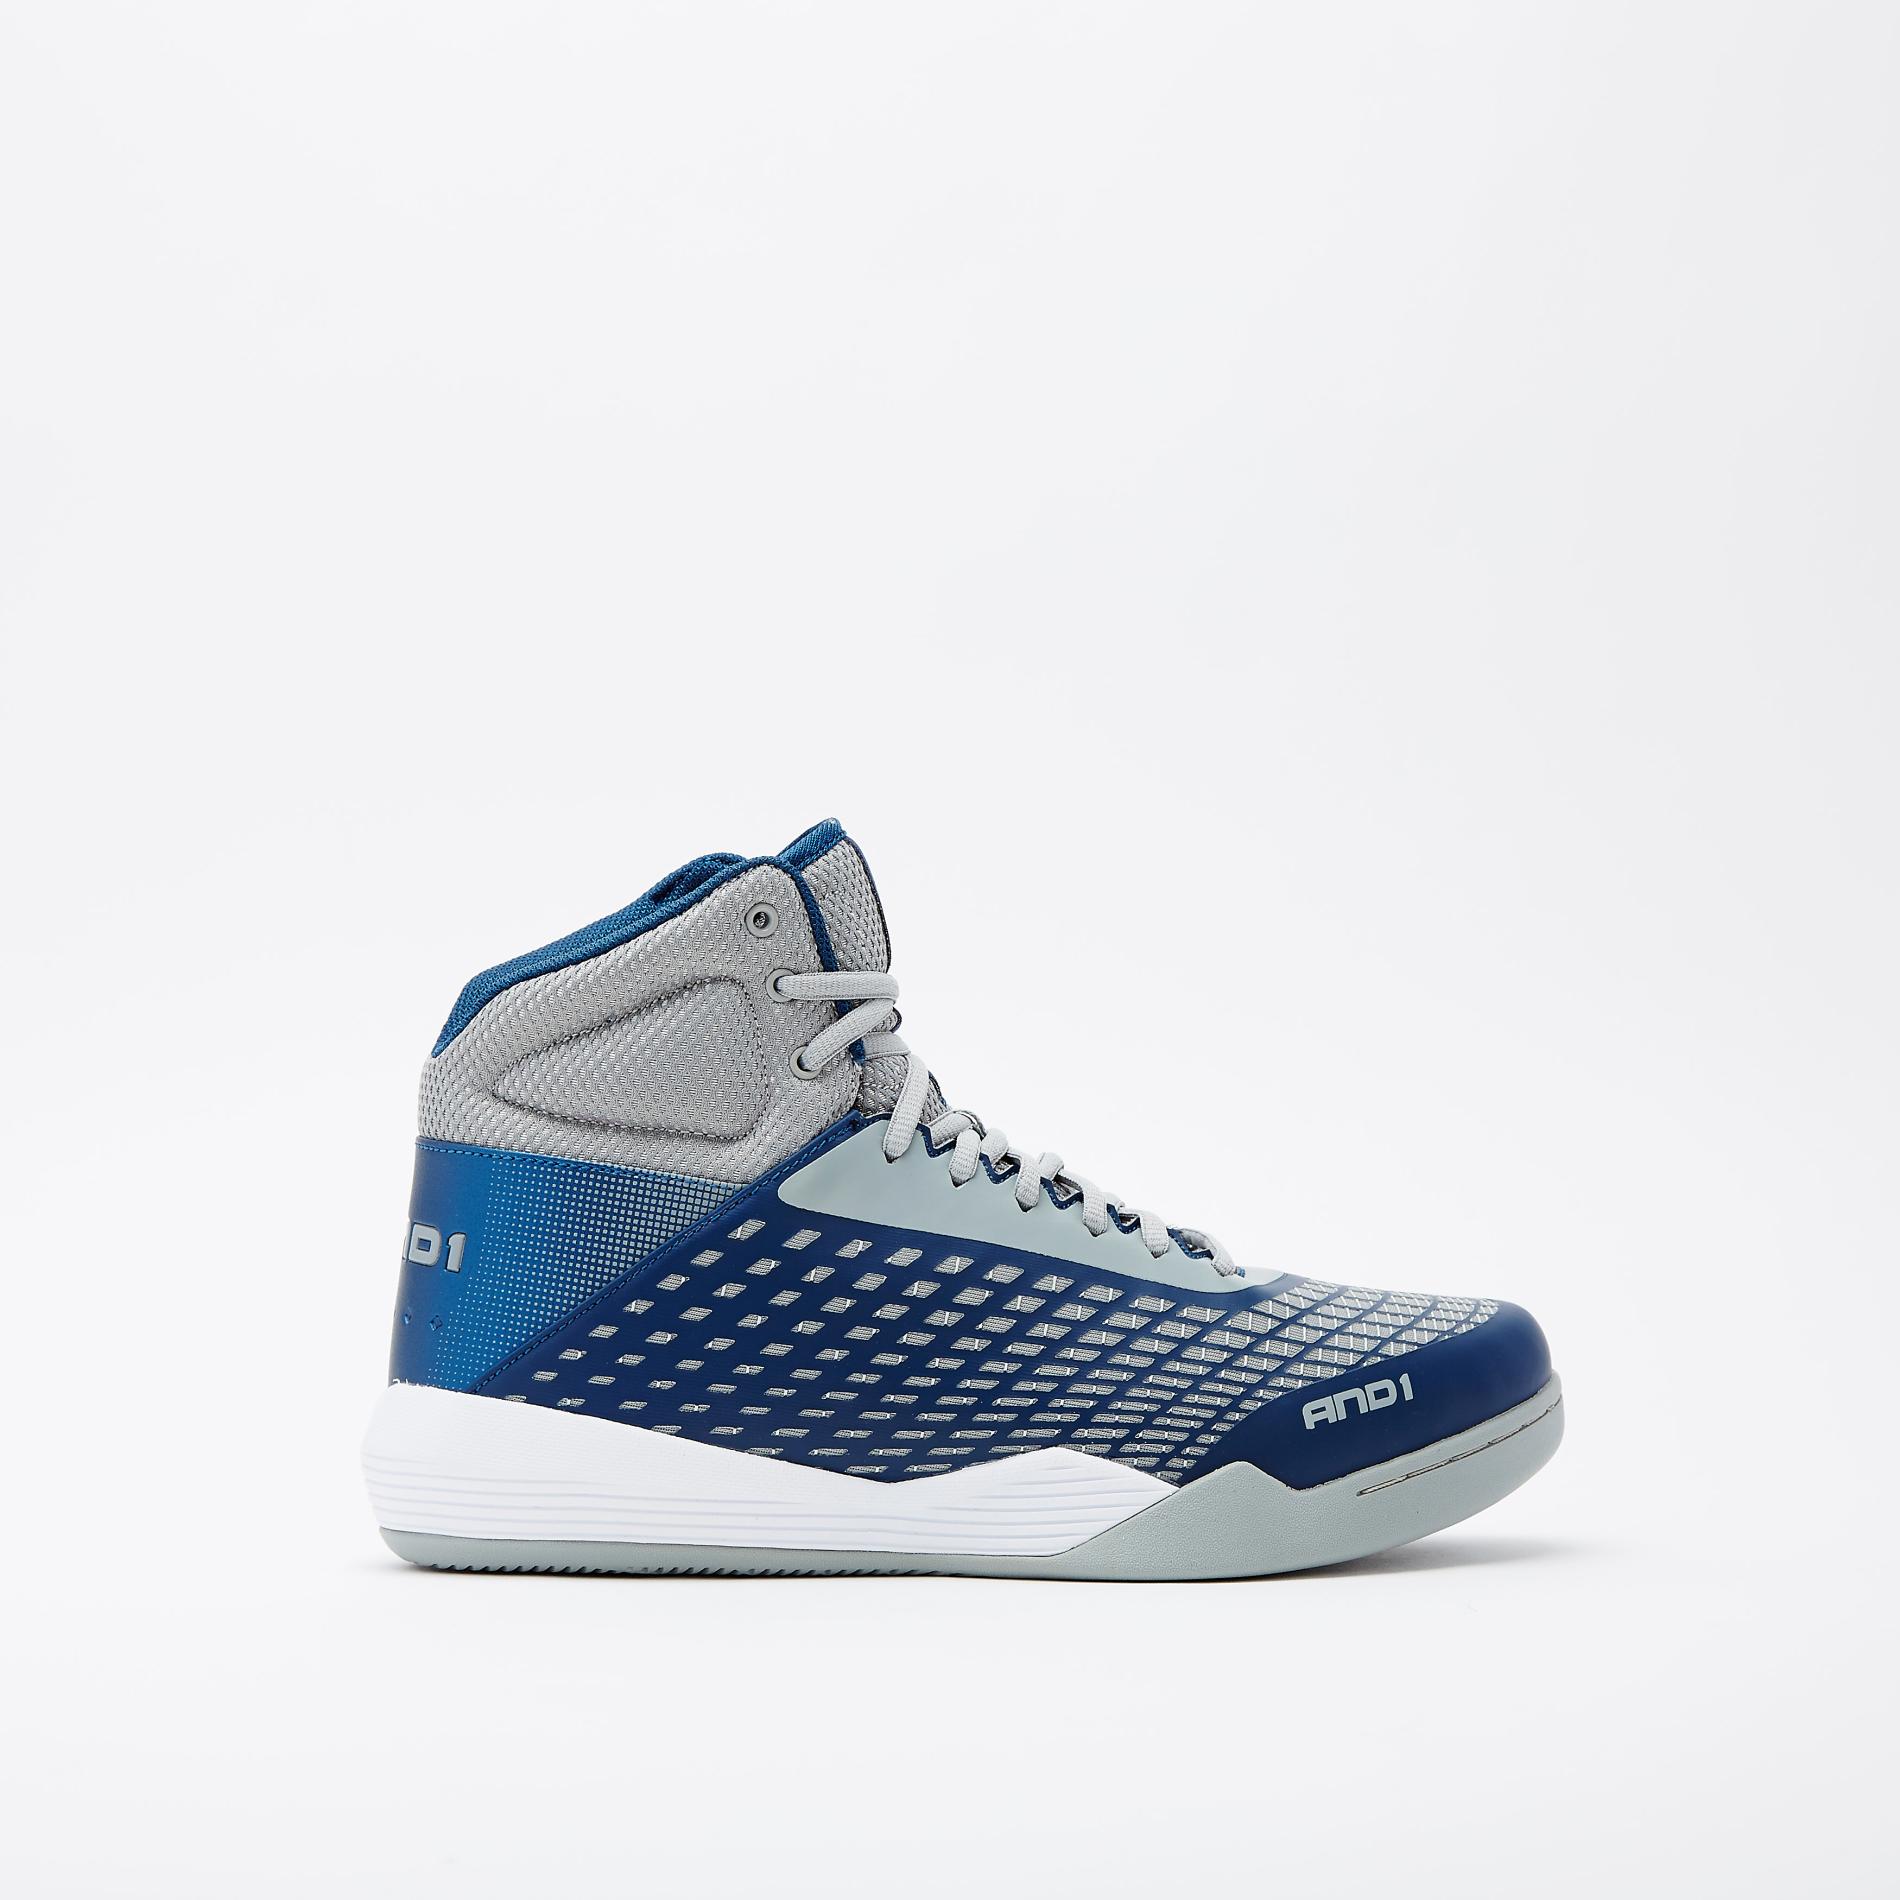 Fila Men's Ascender Blue/Gray/White High-Top Basketball Shoe